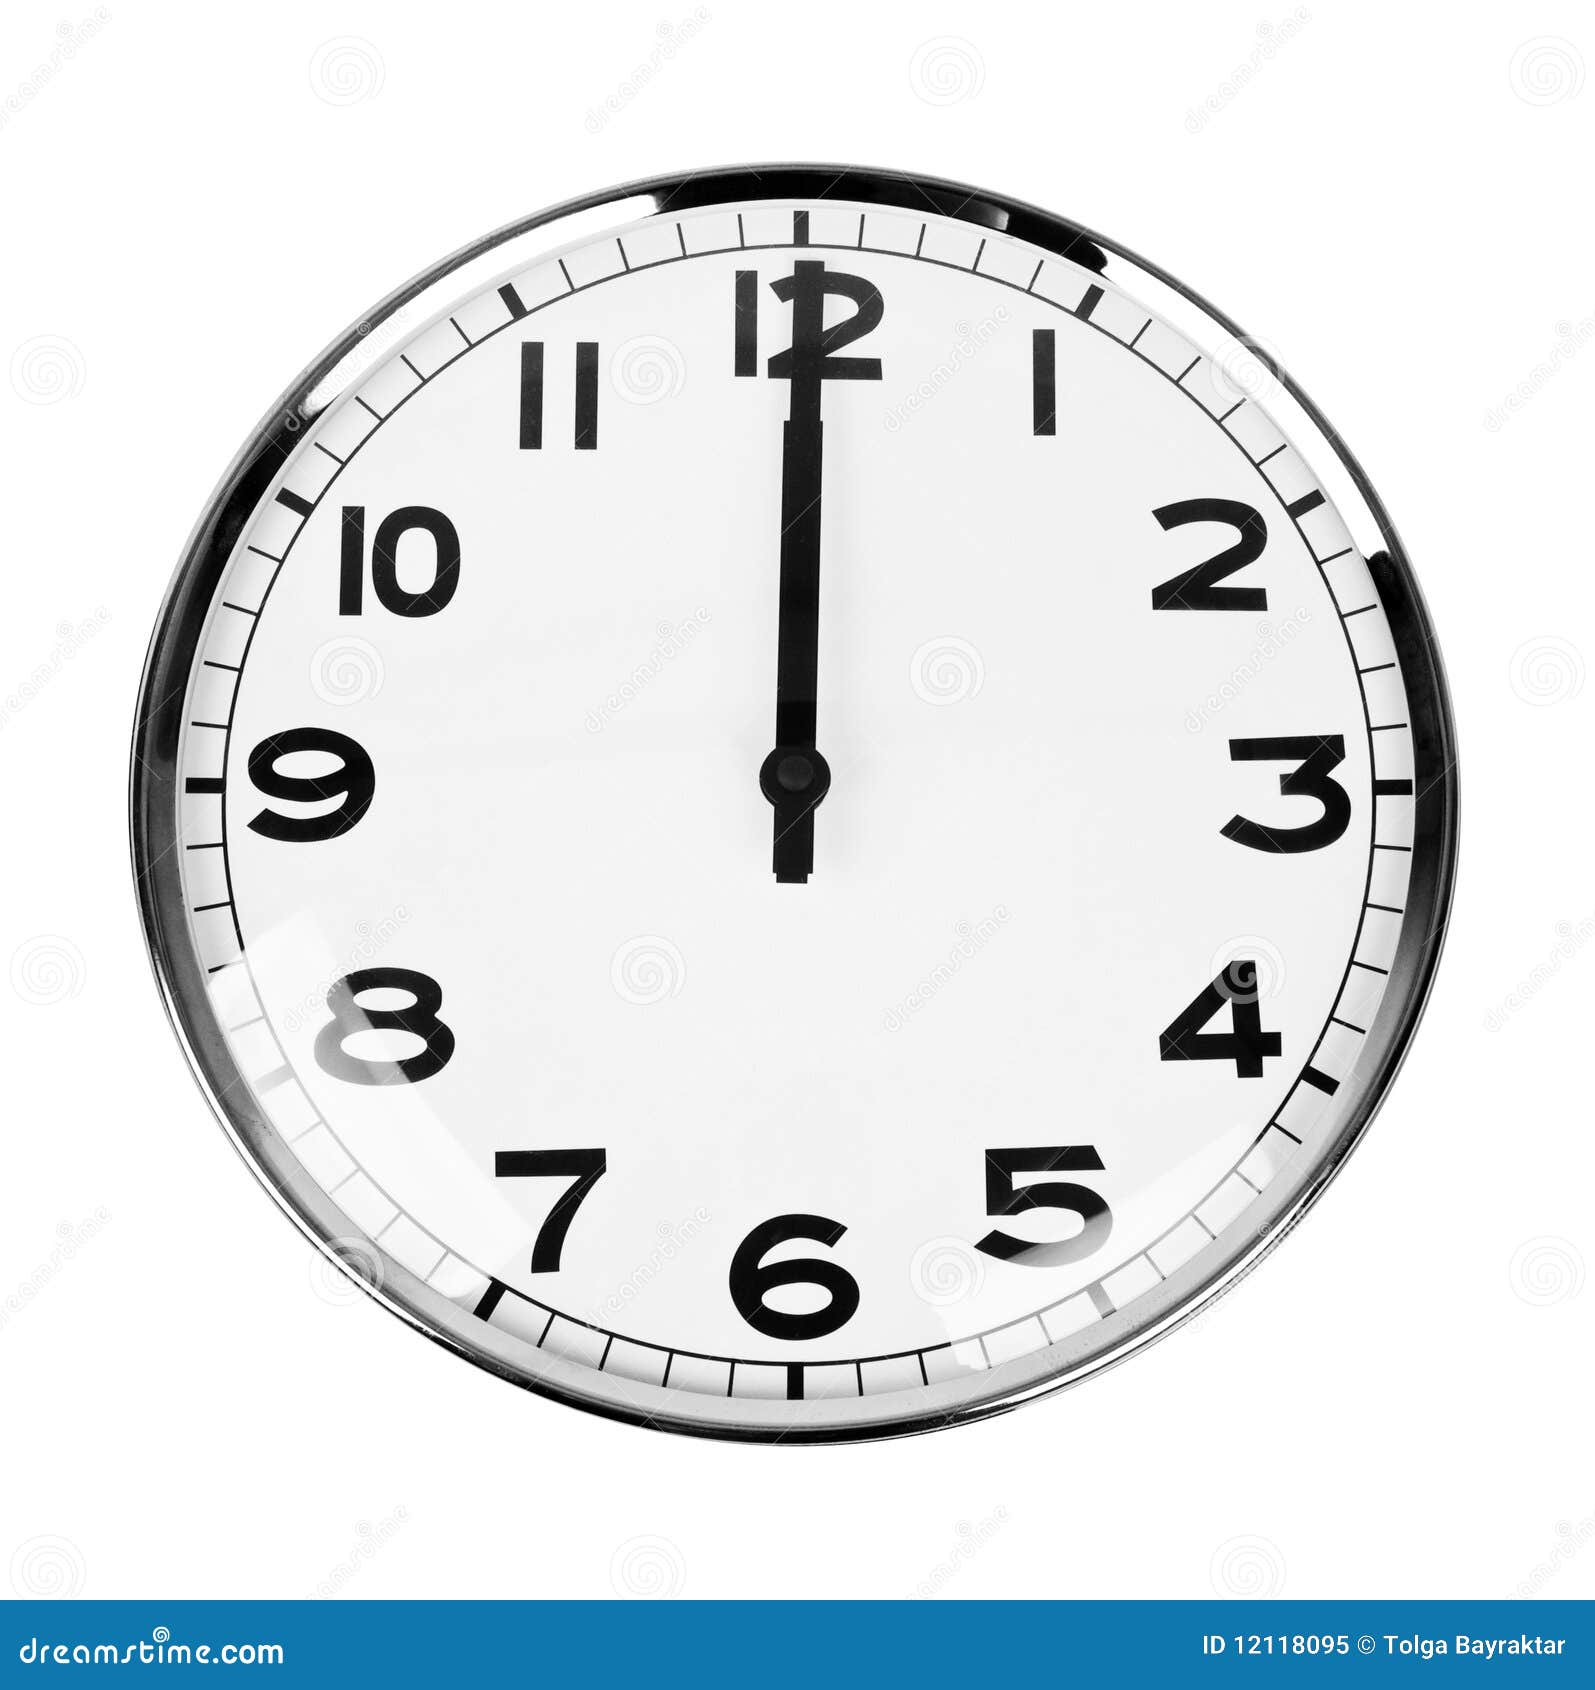 120 часов 12 часов. Часы показывают 12 часов. Часы 12 00. Изображение часов со стрелками. Полдень на часах.